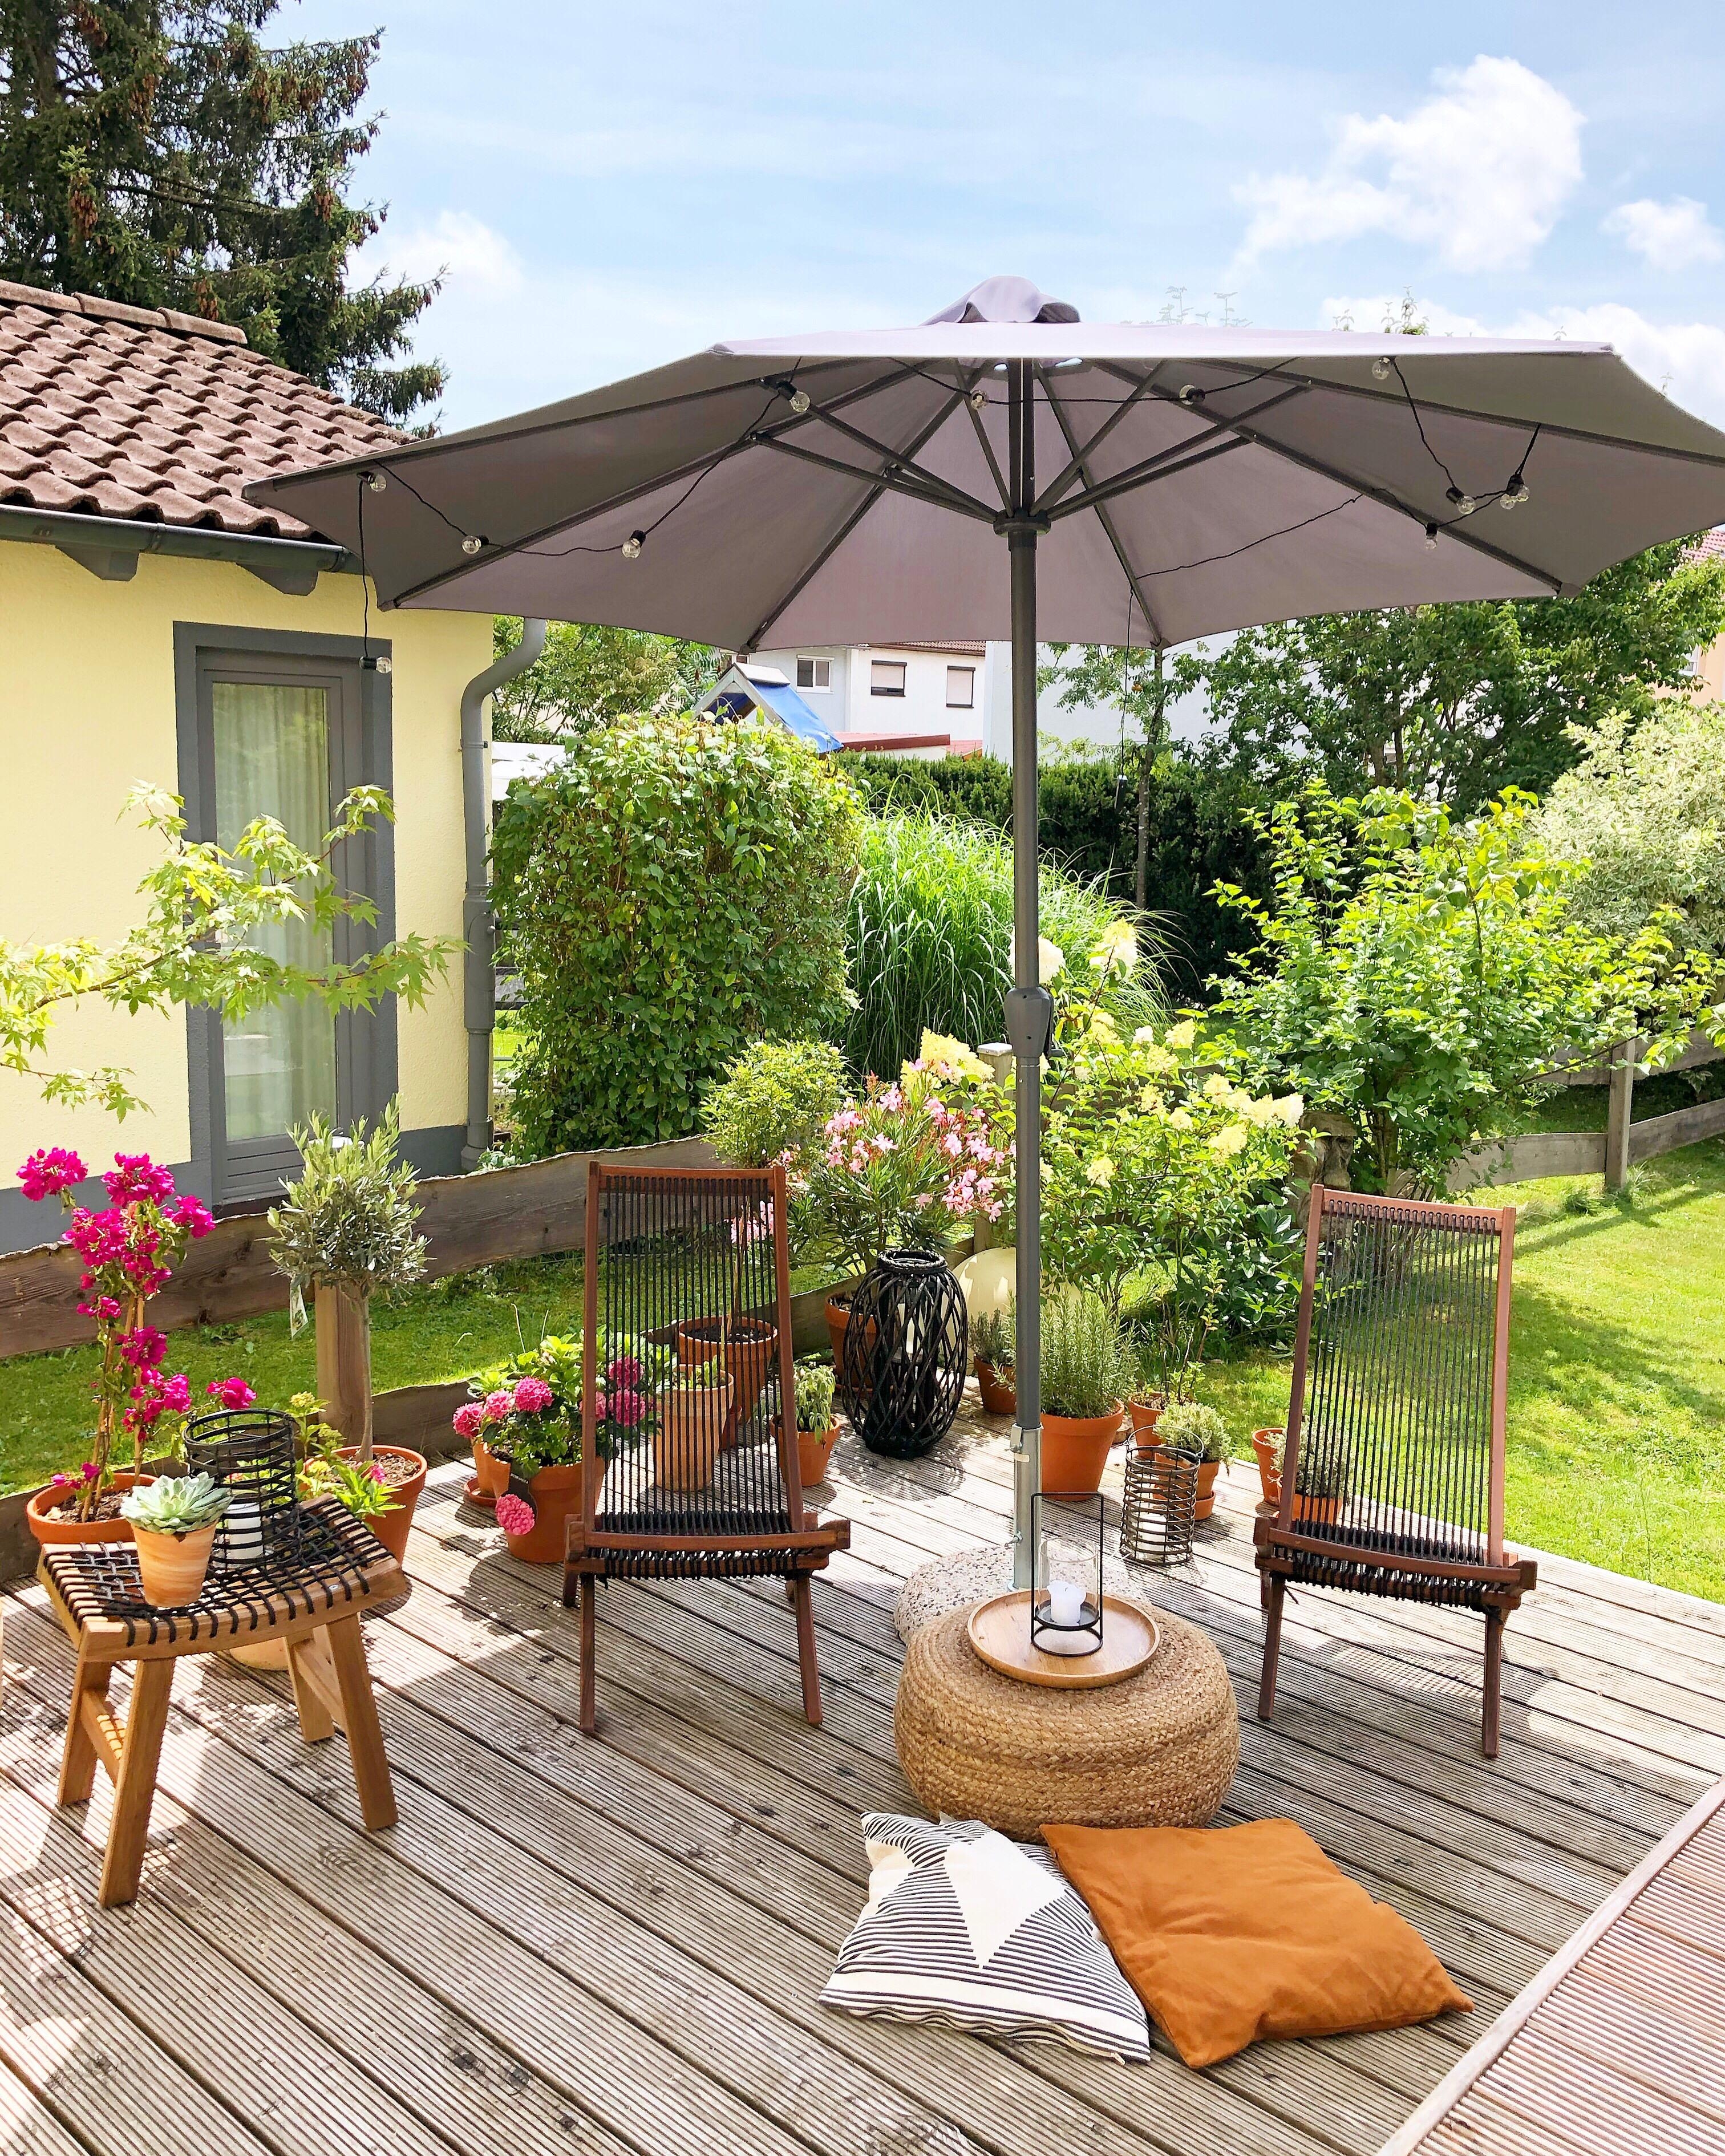 #terrasse #garten #sommer #holzterrasse #gartenstuhl #loungeecke